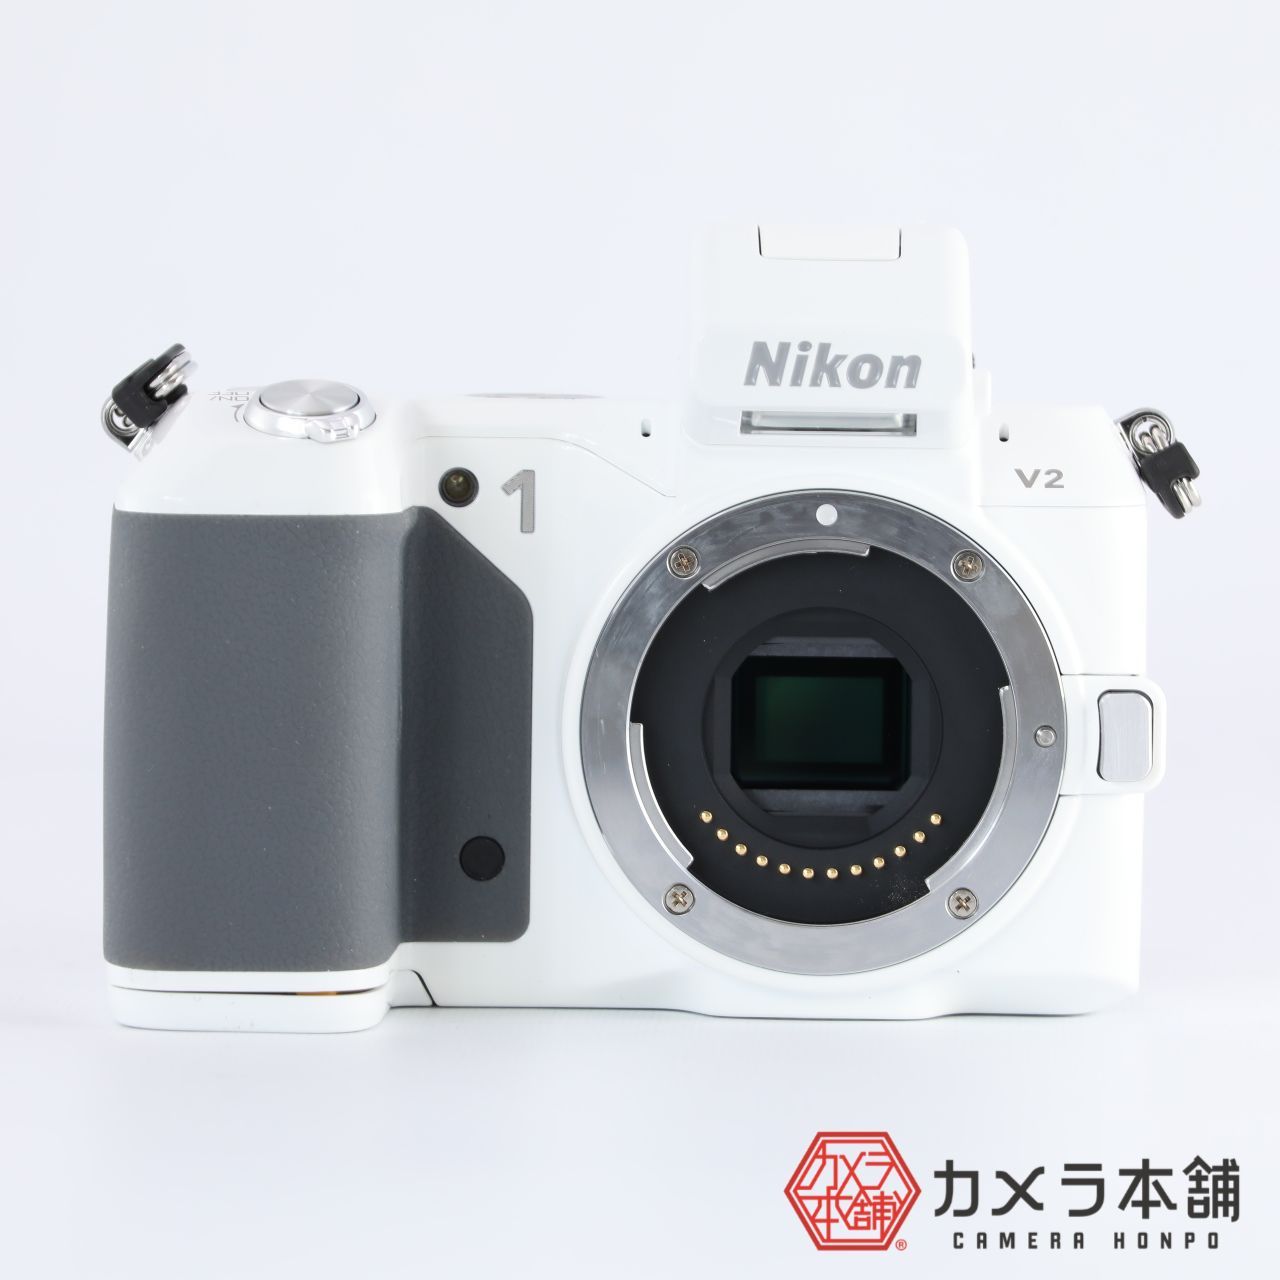 ☆シャッター数9159回☆ ニコン NIKON 1 V2 ボディ ホワイト - デジタルカメラ